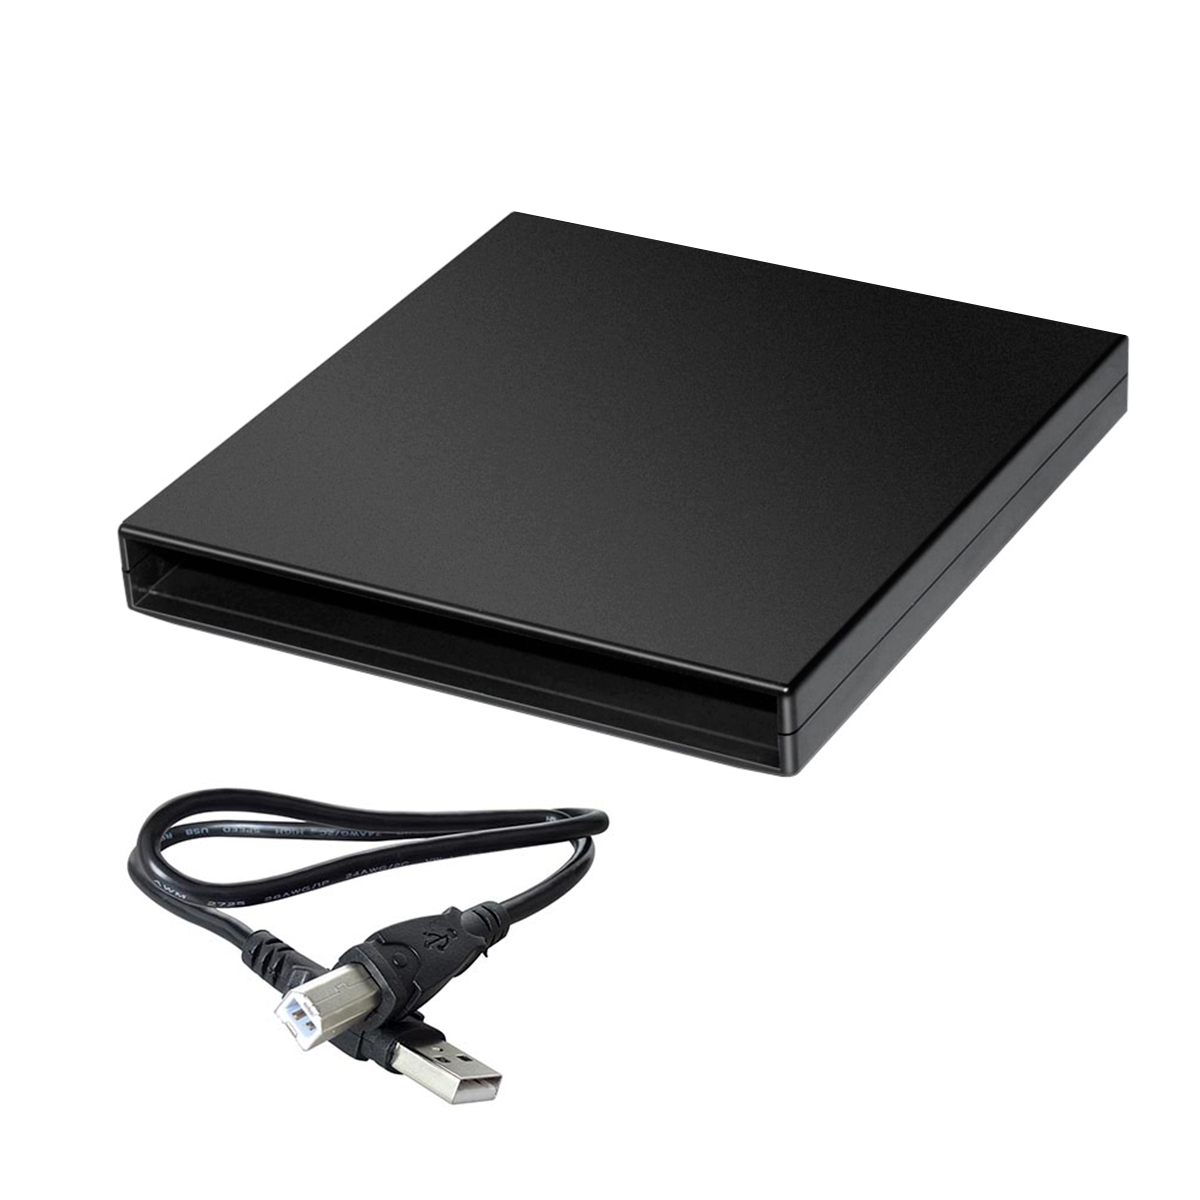 Case para DVD Slim - Portátil USB - Para DVD de notebook